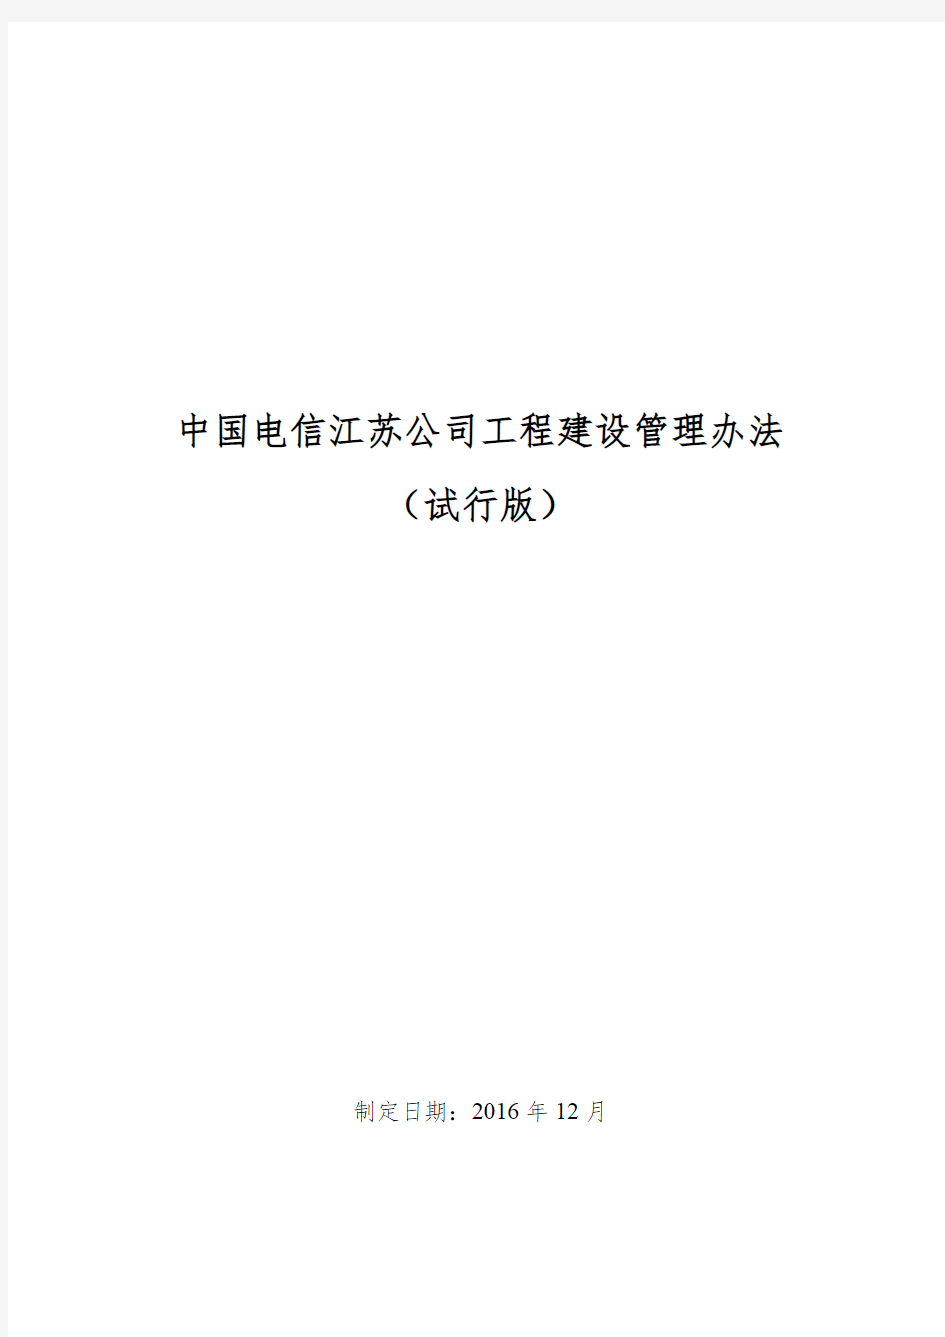 中国电信江苏公司工程建设管理办法(试行版)